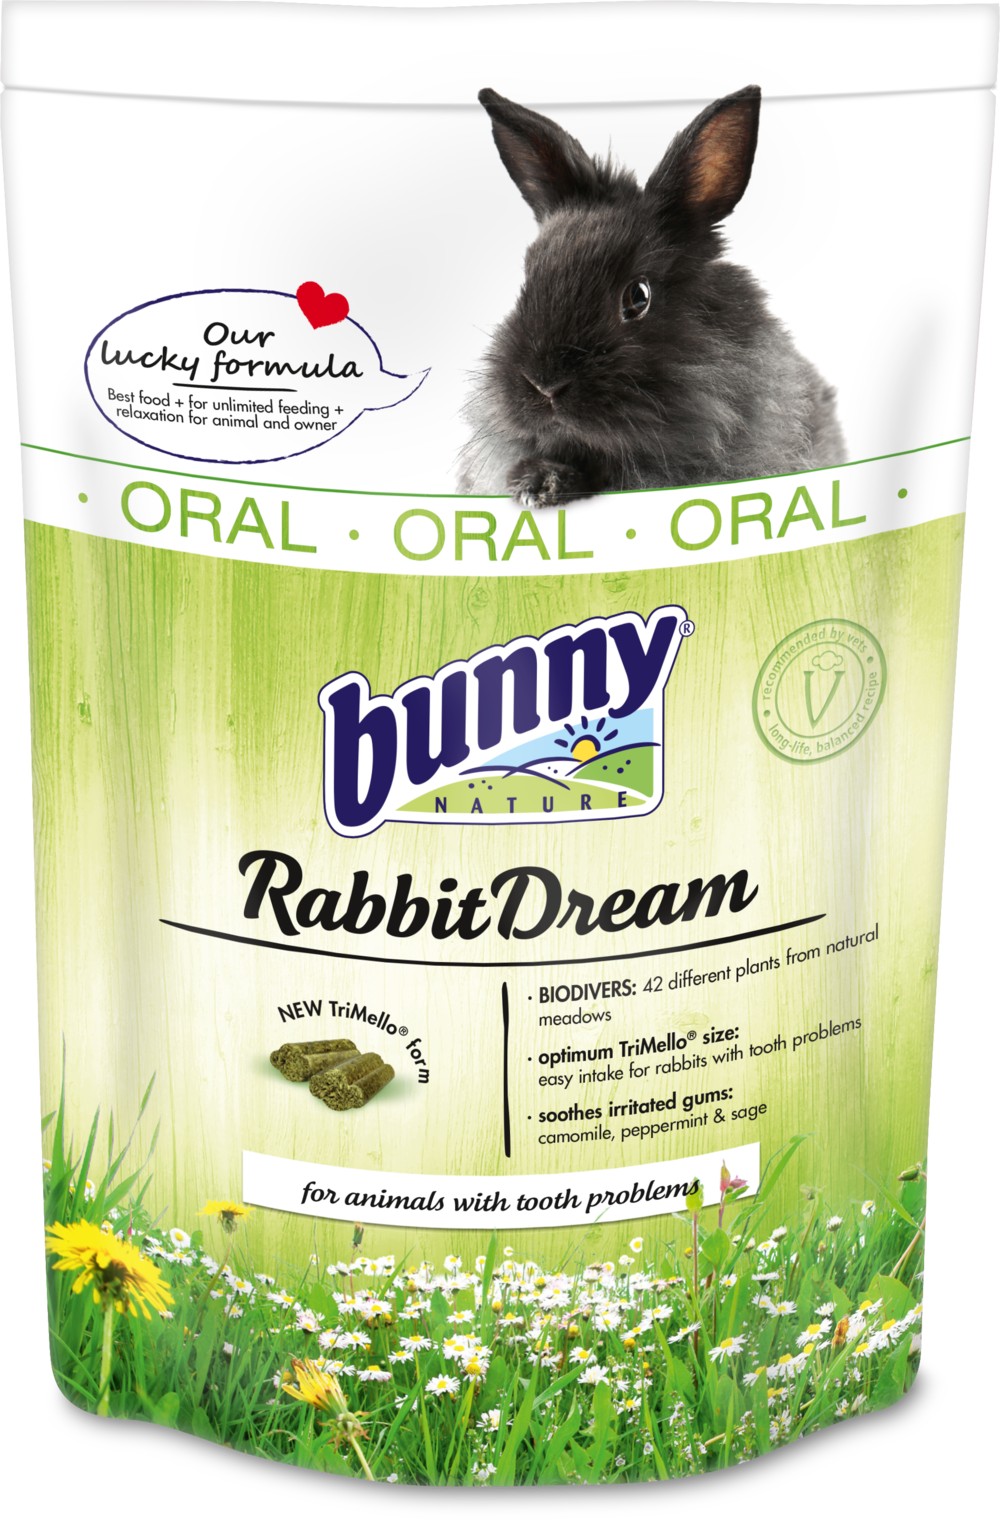 BUNNY NATURE RabbitDream - Oral